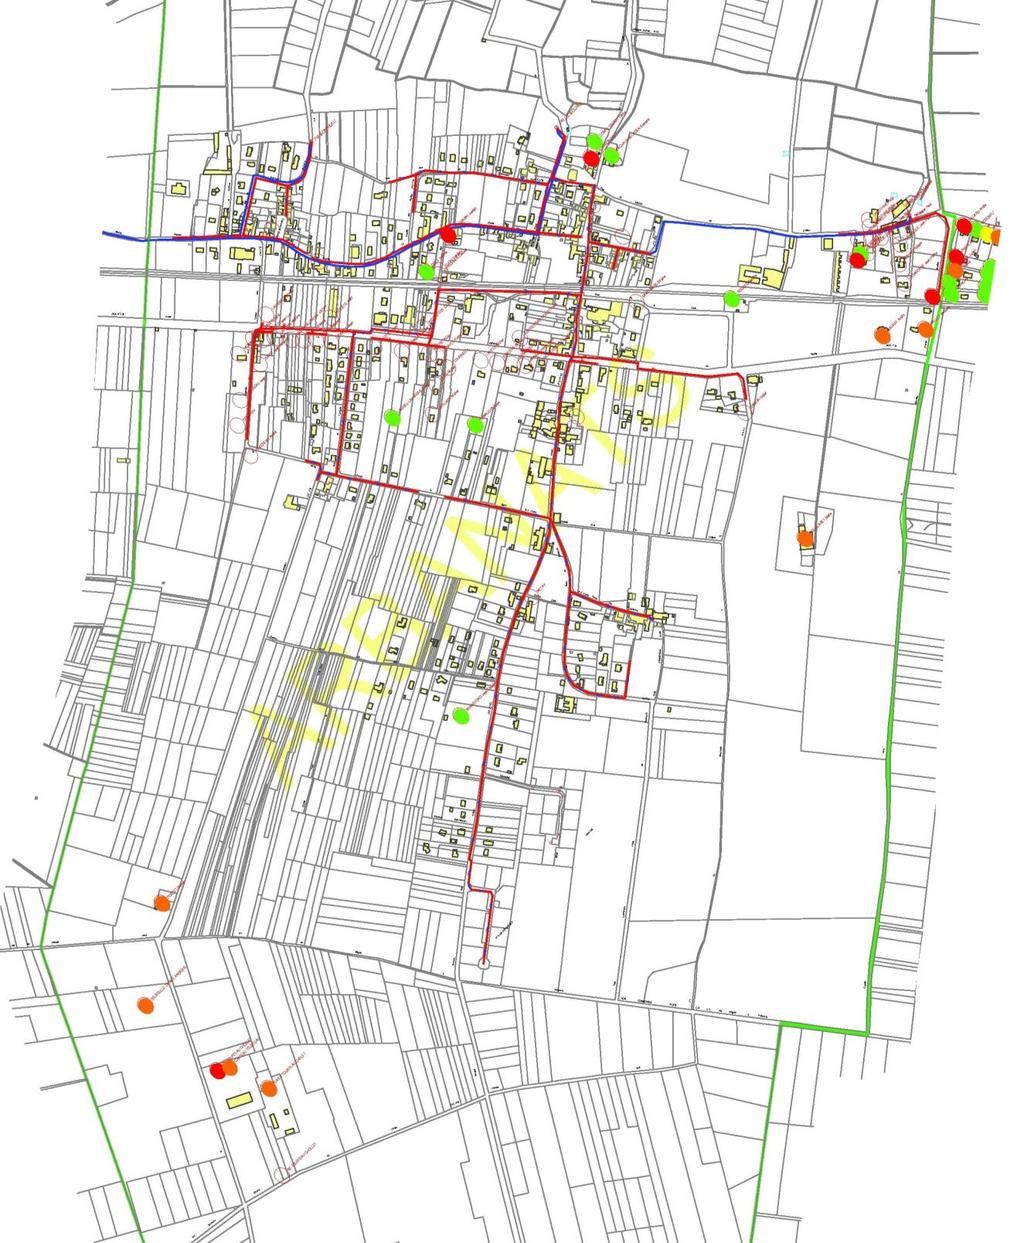 Extrait du plan de conformité des installations en assainissement autonome (Source Lyonnaise des Eaux) résultats des enquêtes : - vert : installation acceptable - jaune :